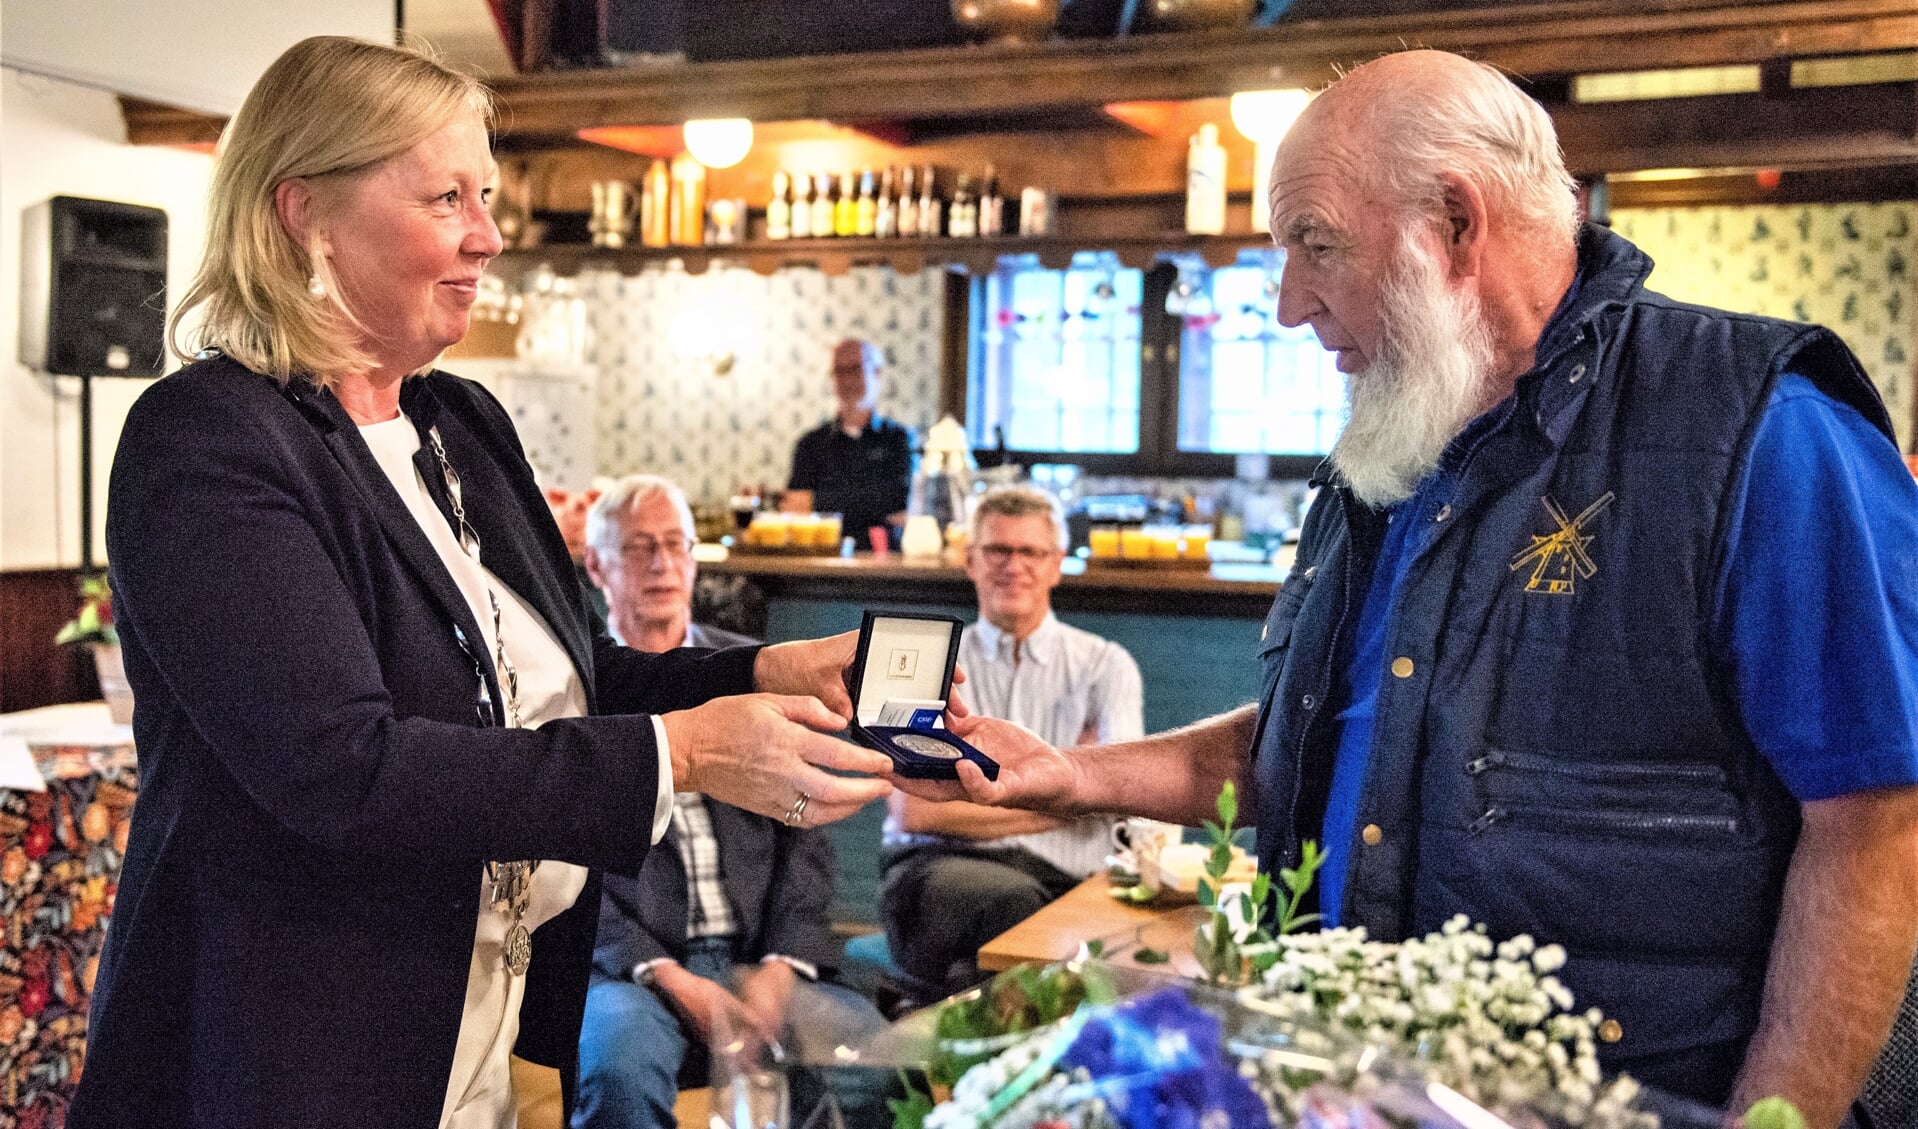 Locoburgemeester Astrid van Eekelen overhandigt Bram Zonderop de Zilveren Erepenning van de gemeente (foto: Barbara Koppe).